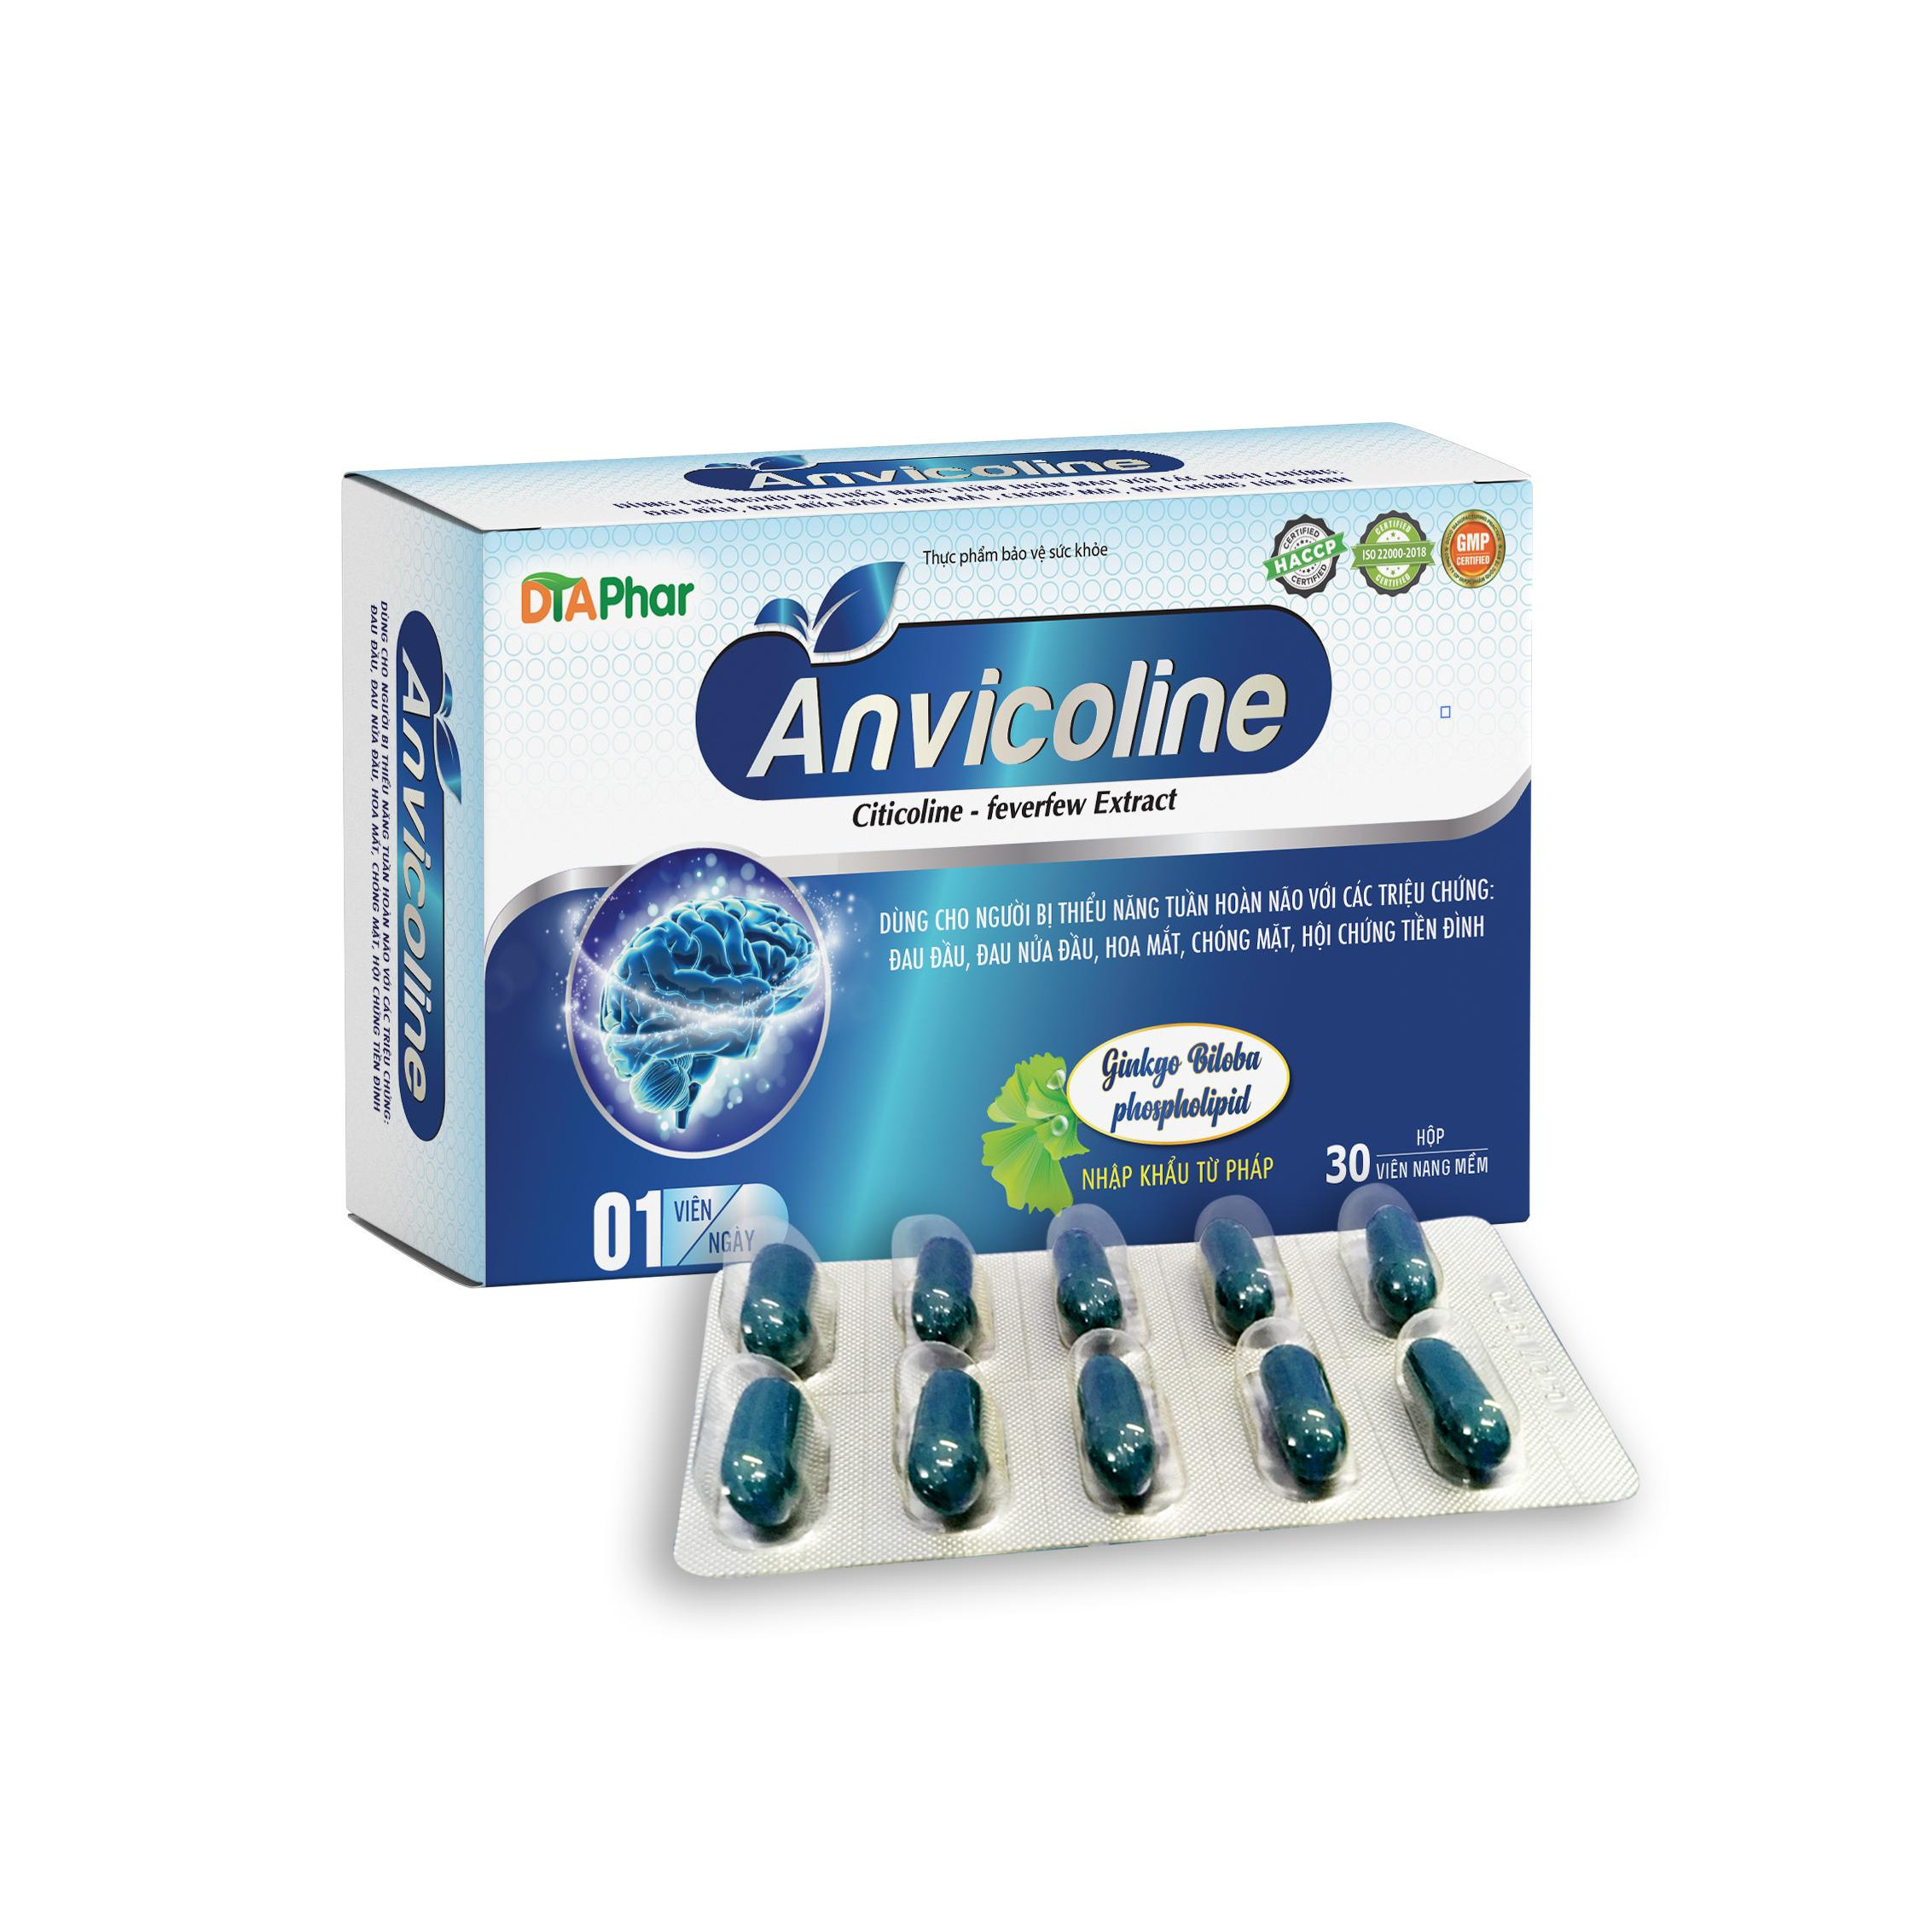 Viên uống hoạt huyết dưỡng não Anvicoline Hỗ trợ giảm hoa mắt chóng mặt đau đầu hạn chế nguy cơ di chứng sau tai biến Hộp 30 viên Tâm An Pharma